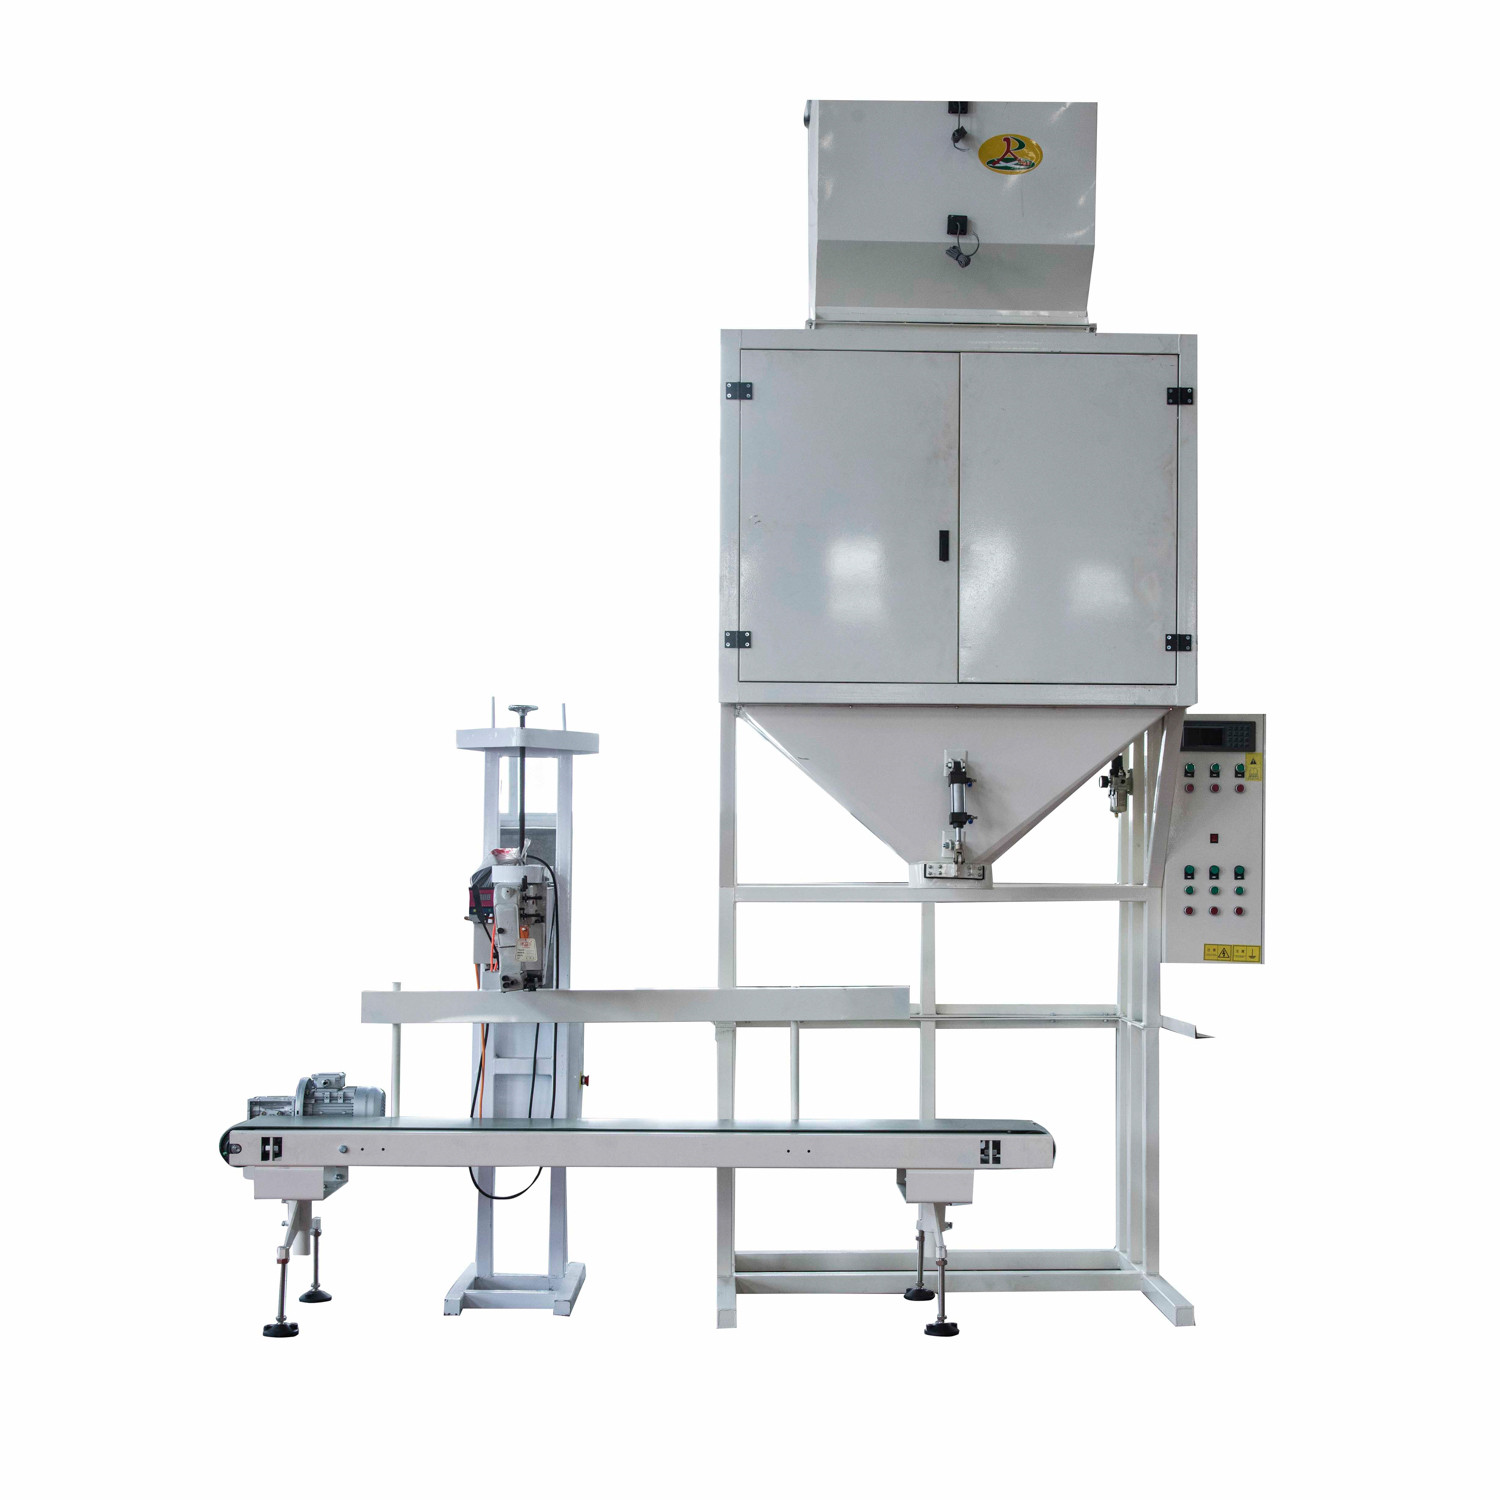 DCS-S torbalama kantarı sistemi tahıl tohum paketleme torbalama makinesi